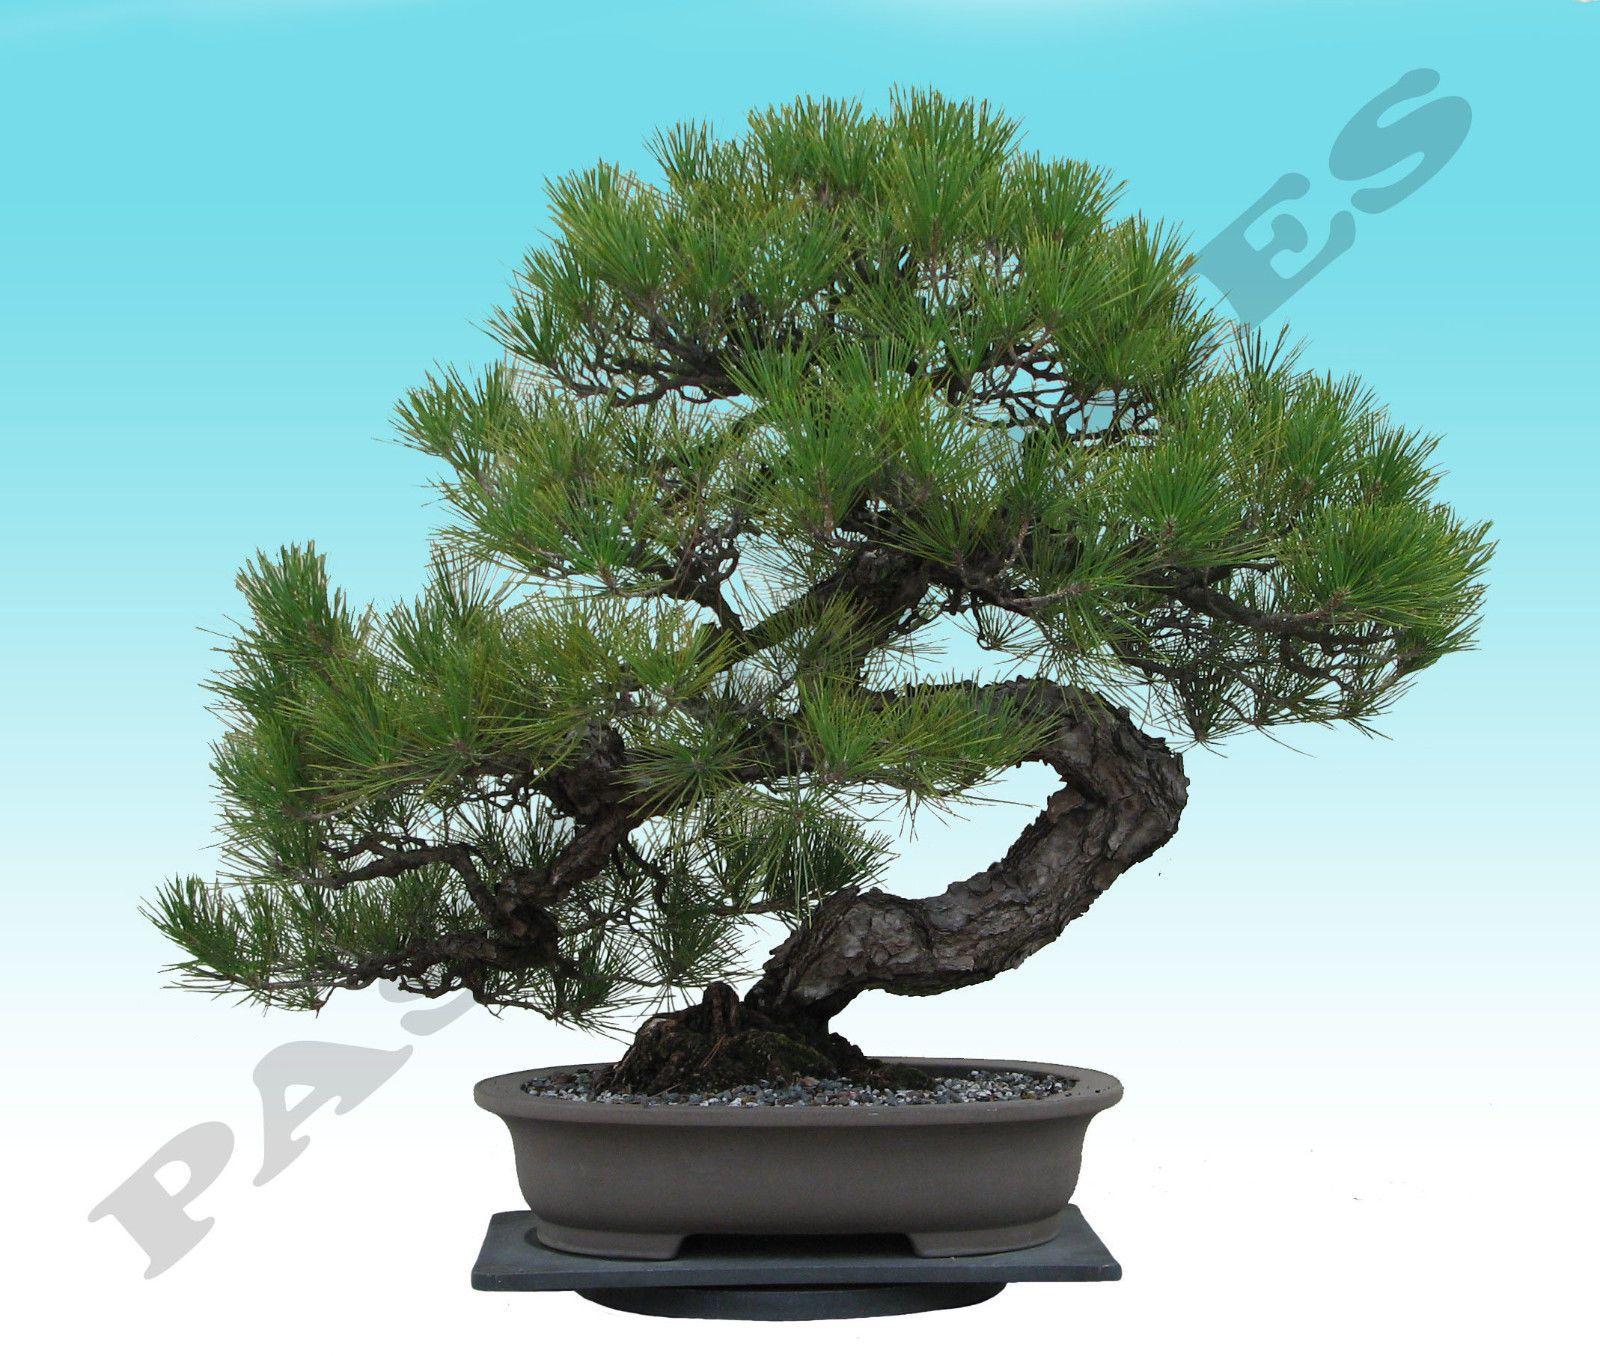 Black Pine Tree Logo - RARE Japanese Black Pine Bonsai Tree Seeds, Bonsai Pine Tree Seeds ...